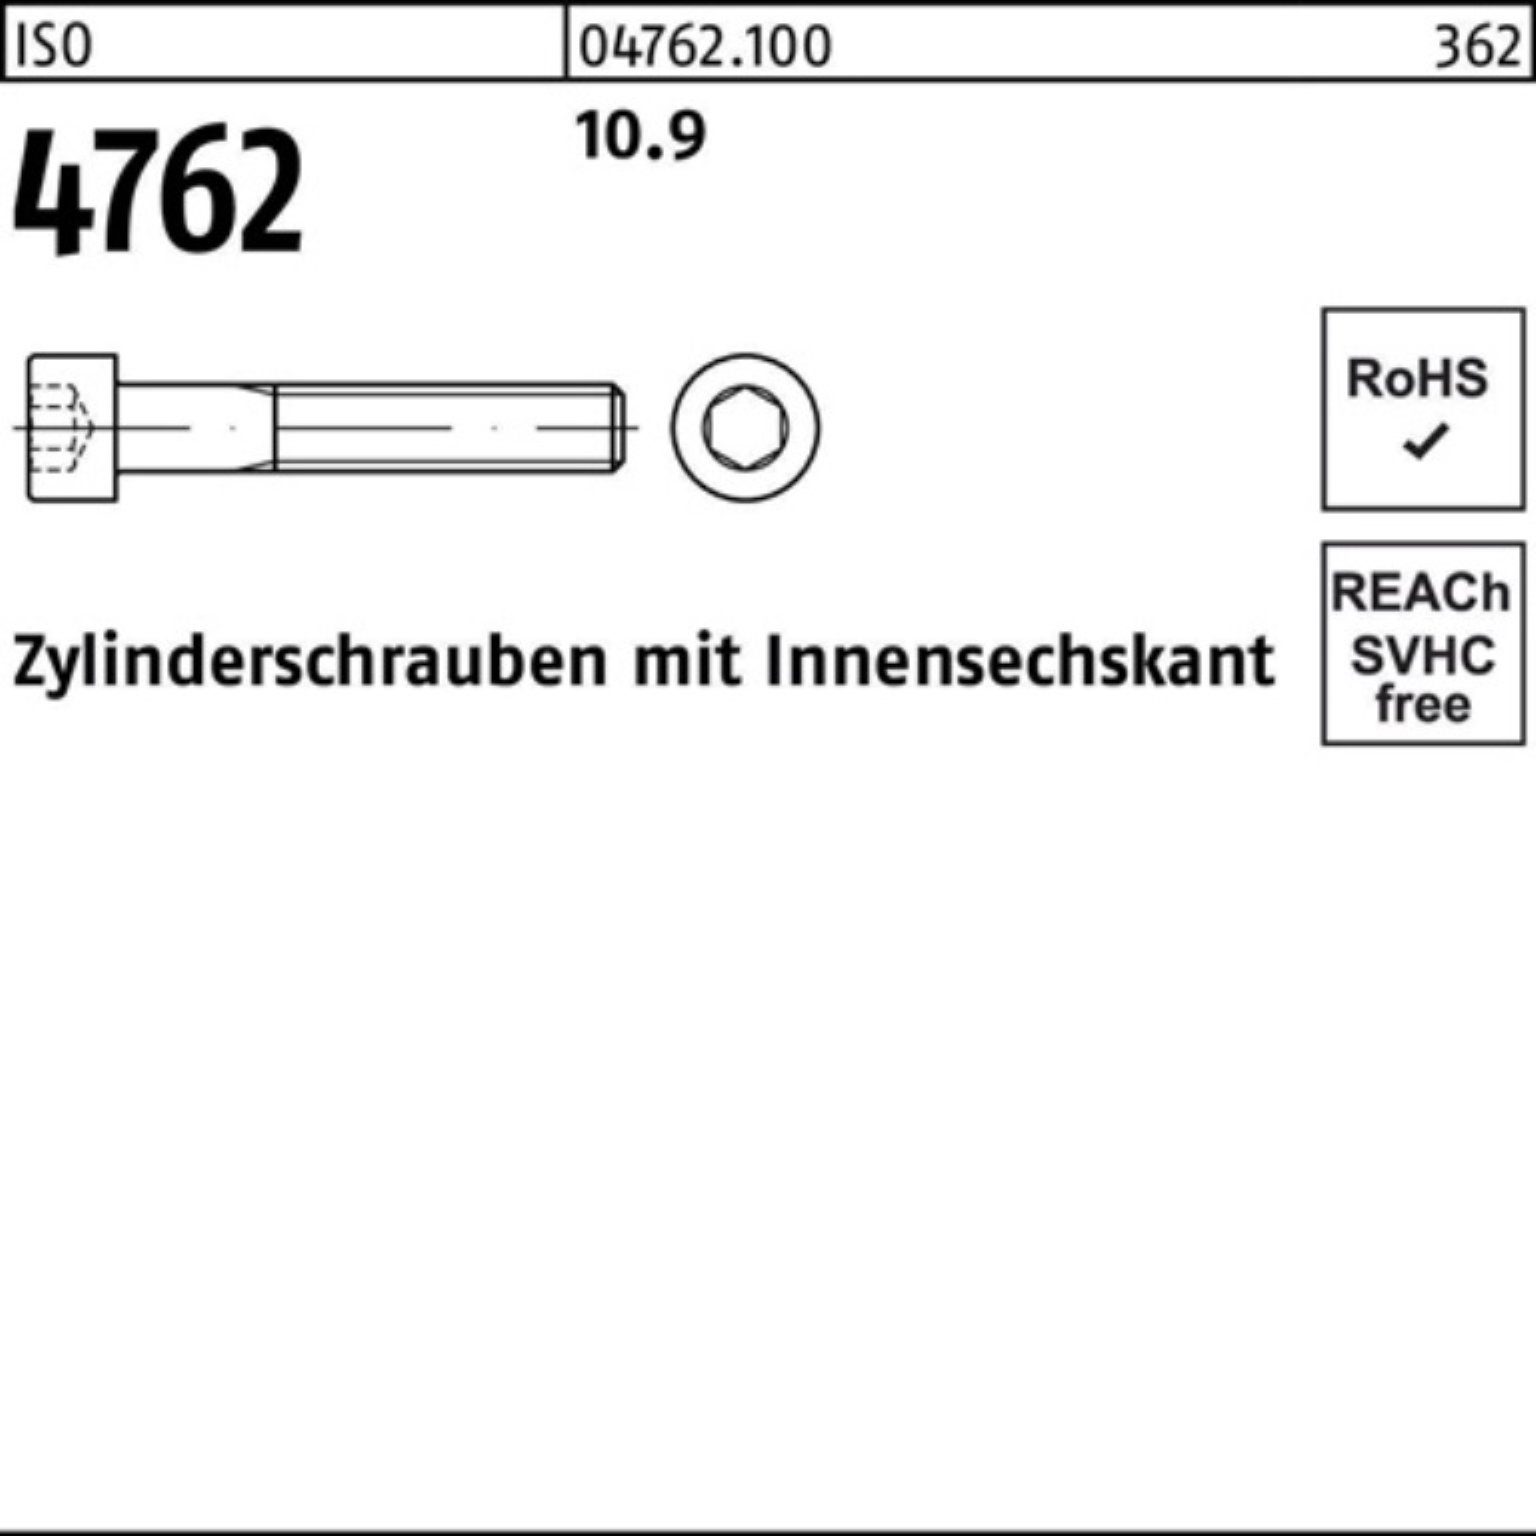 4762 Pack Zylinderschraube Zylinderschraube Reyher Stück M8x 200er 30 10.9 ISO Innen-6kt 200